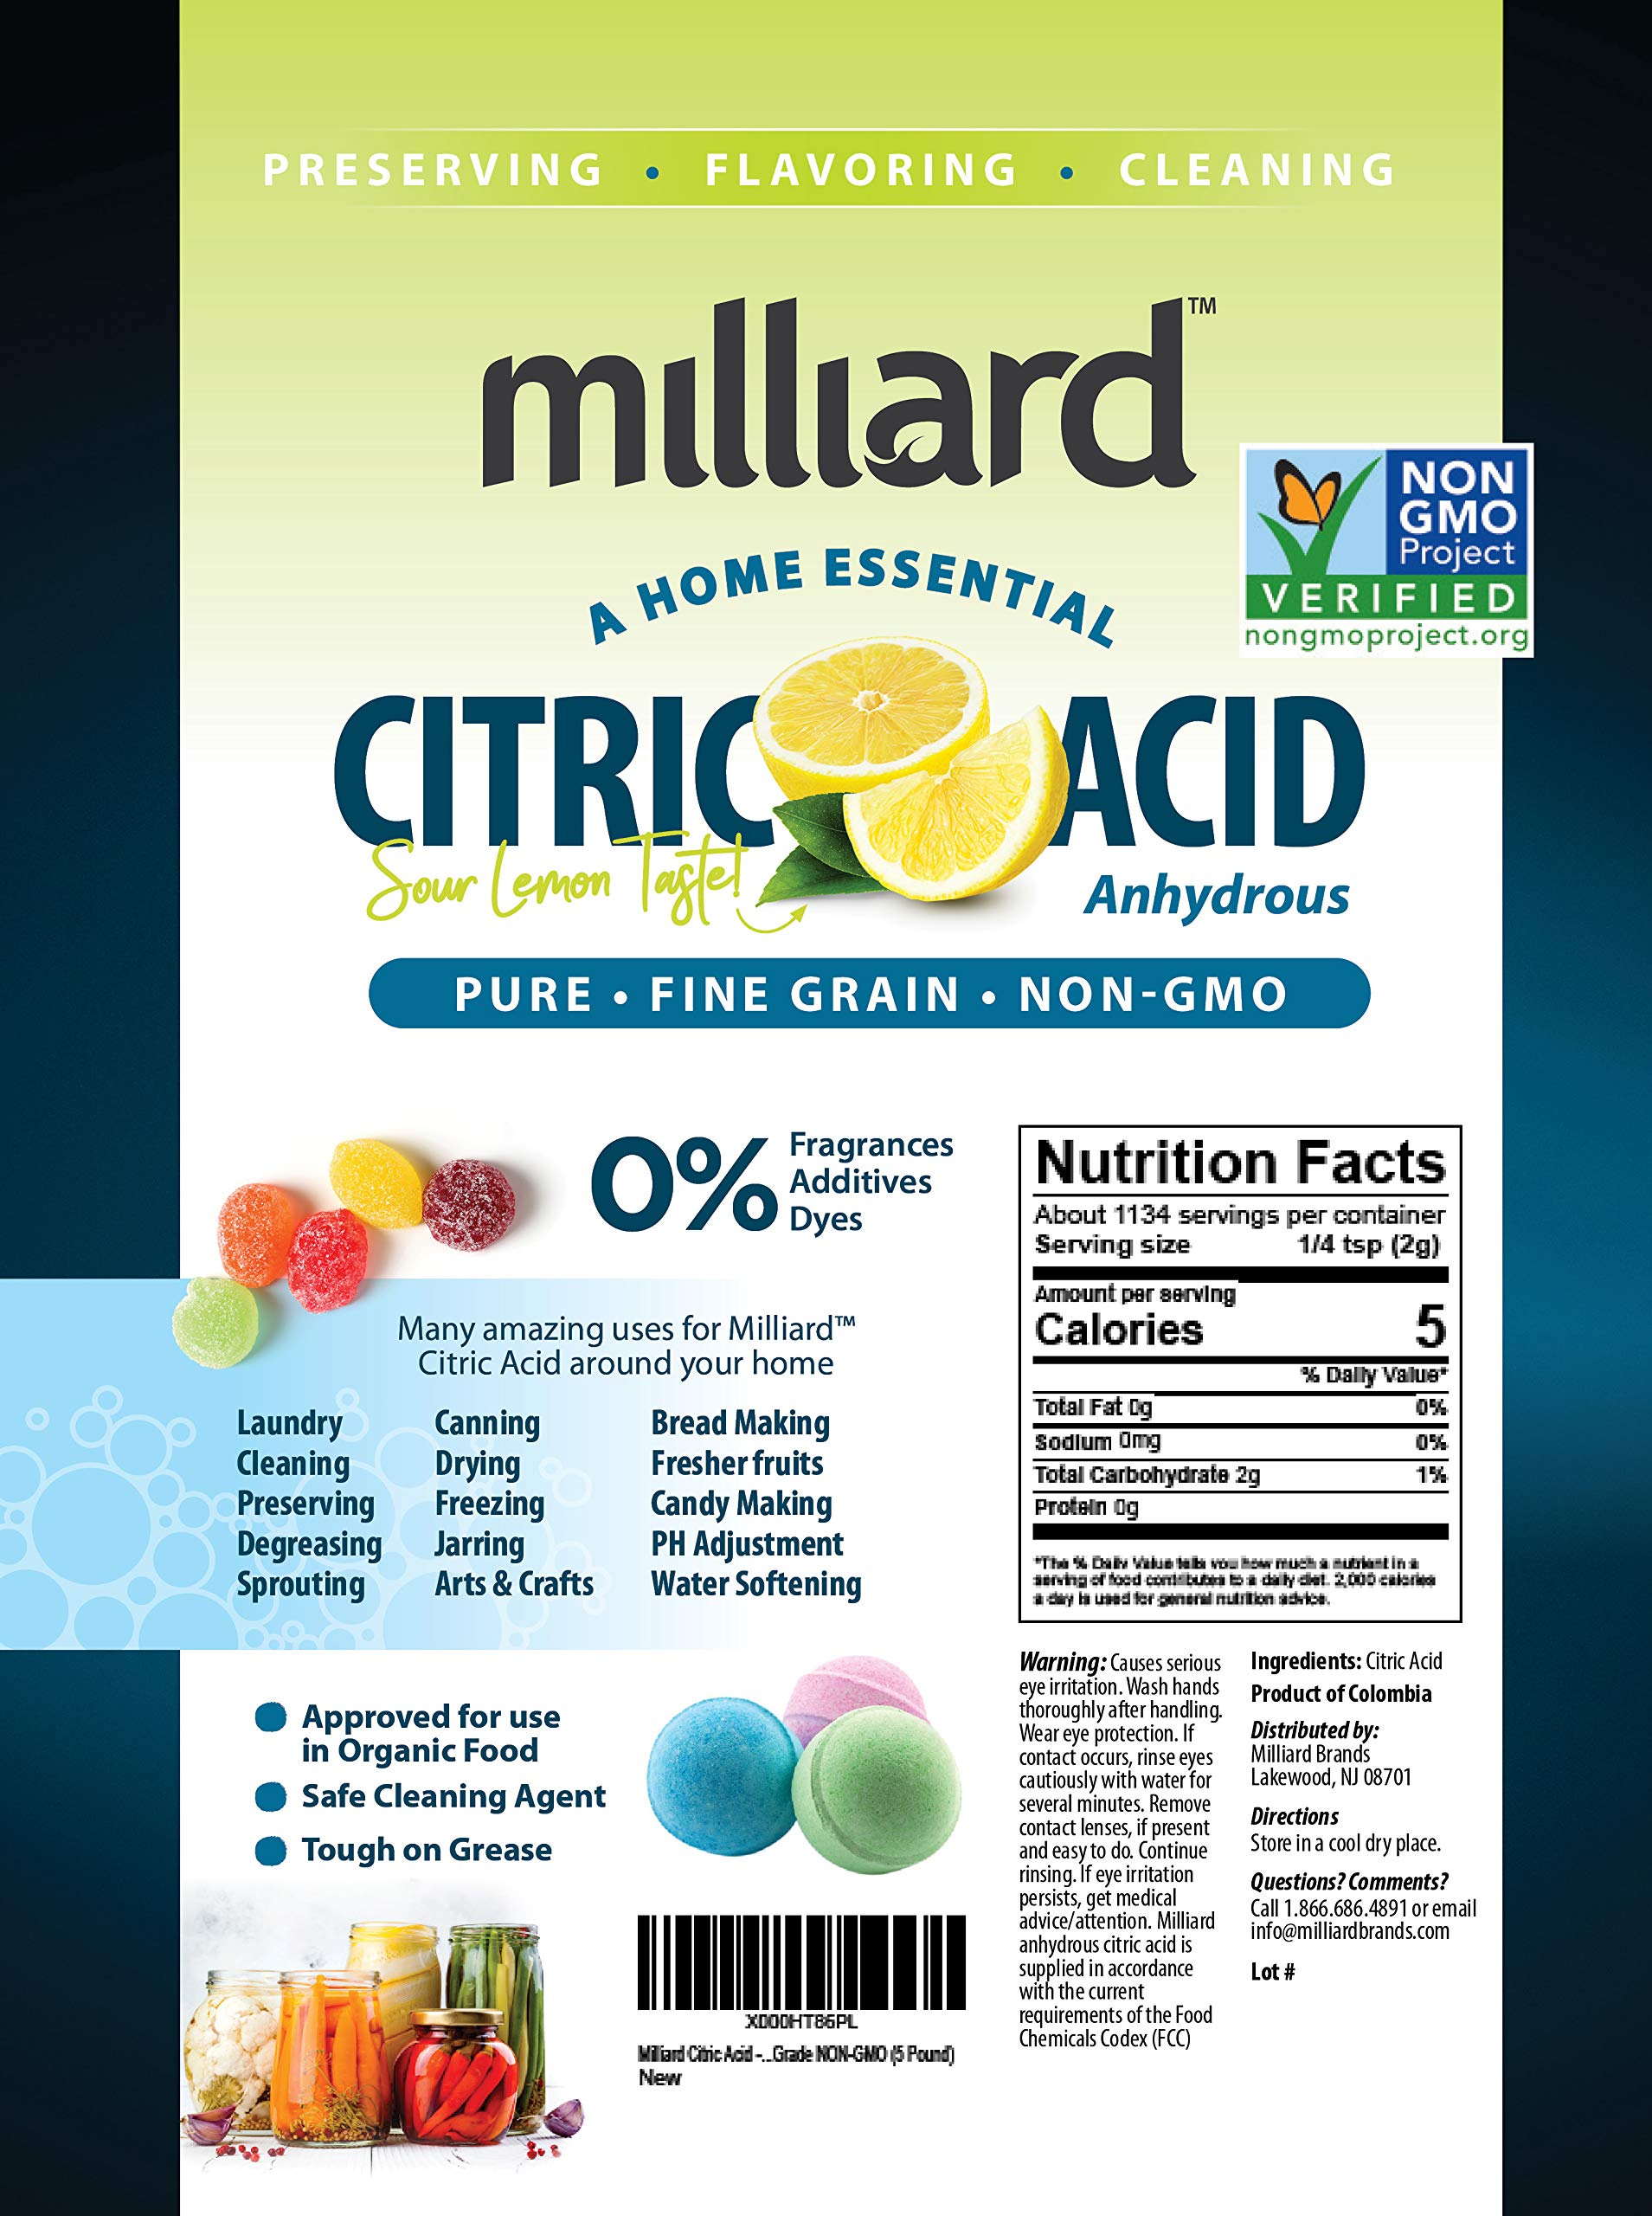 Milliard Citric Acid 5 Pound - 100% Pure Food Grade Non-GMO Project Verified (5 Pound)